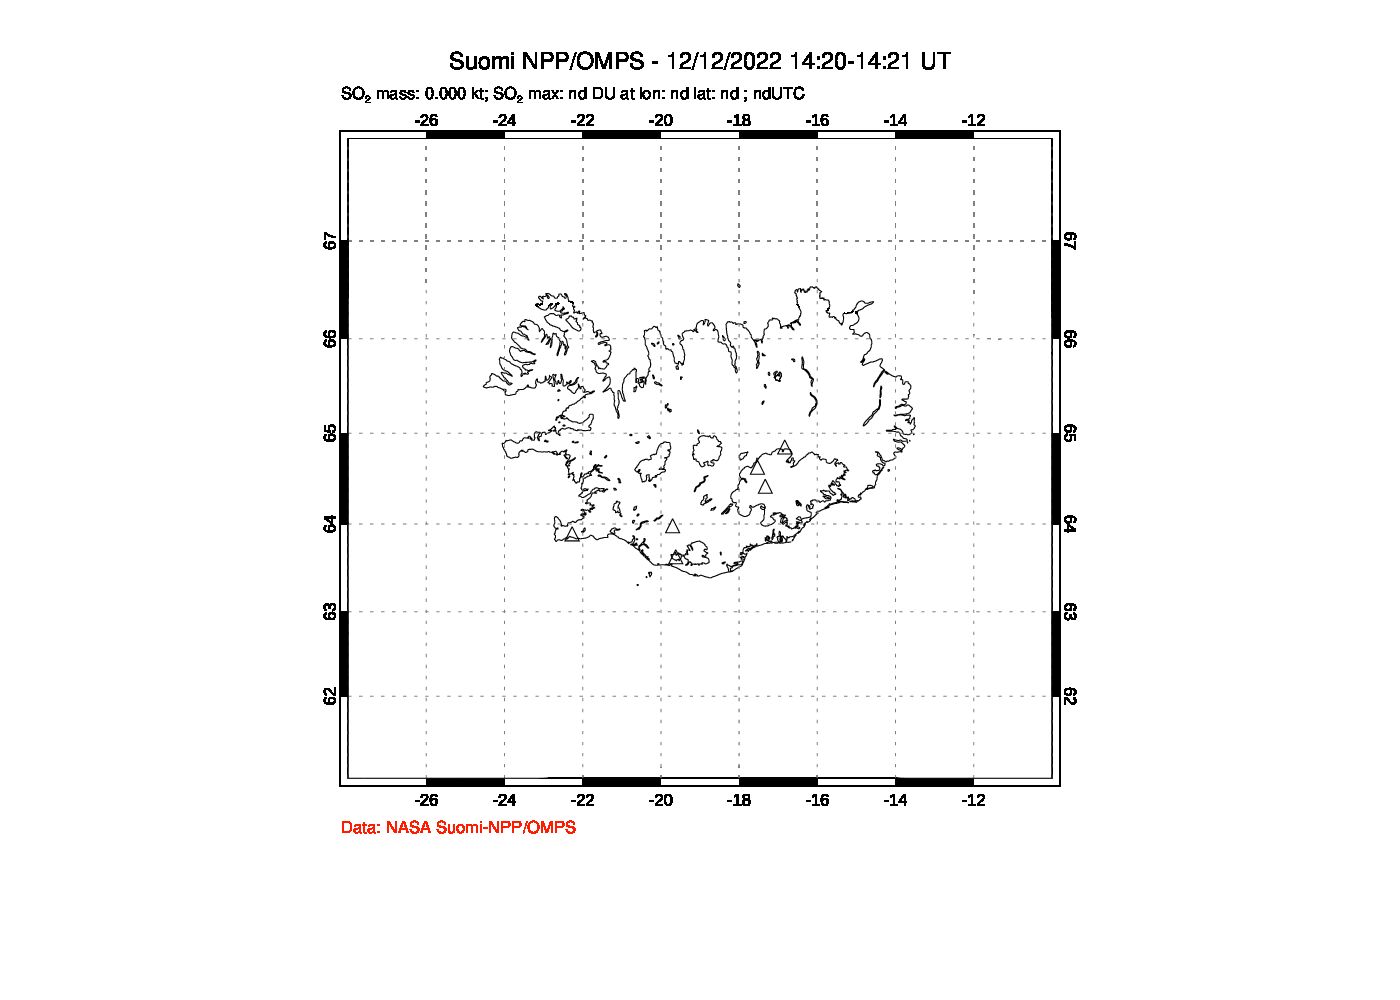 A sulfur dioxide image over Iceland on Dec 12, 2022.